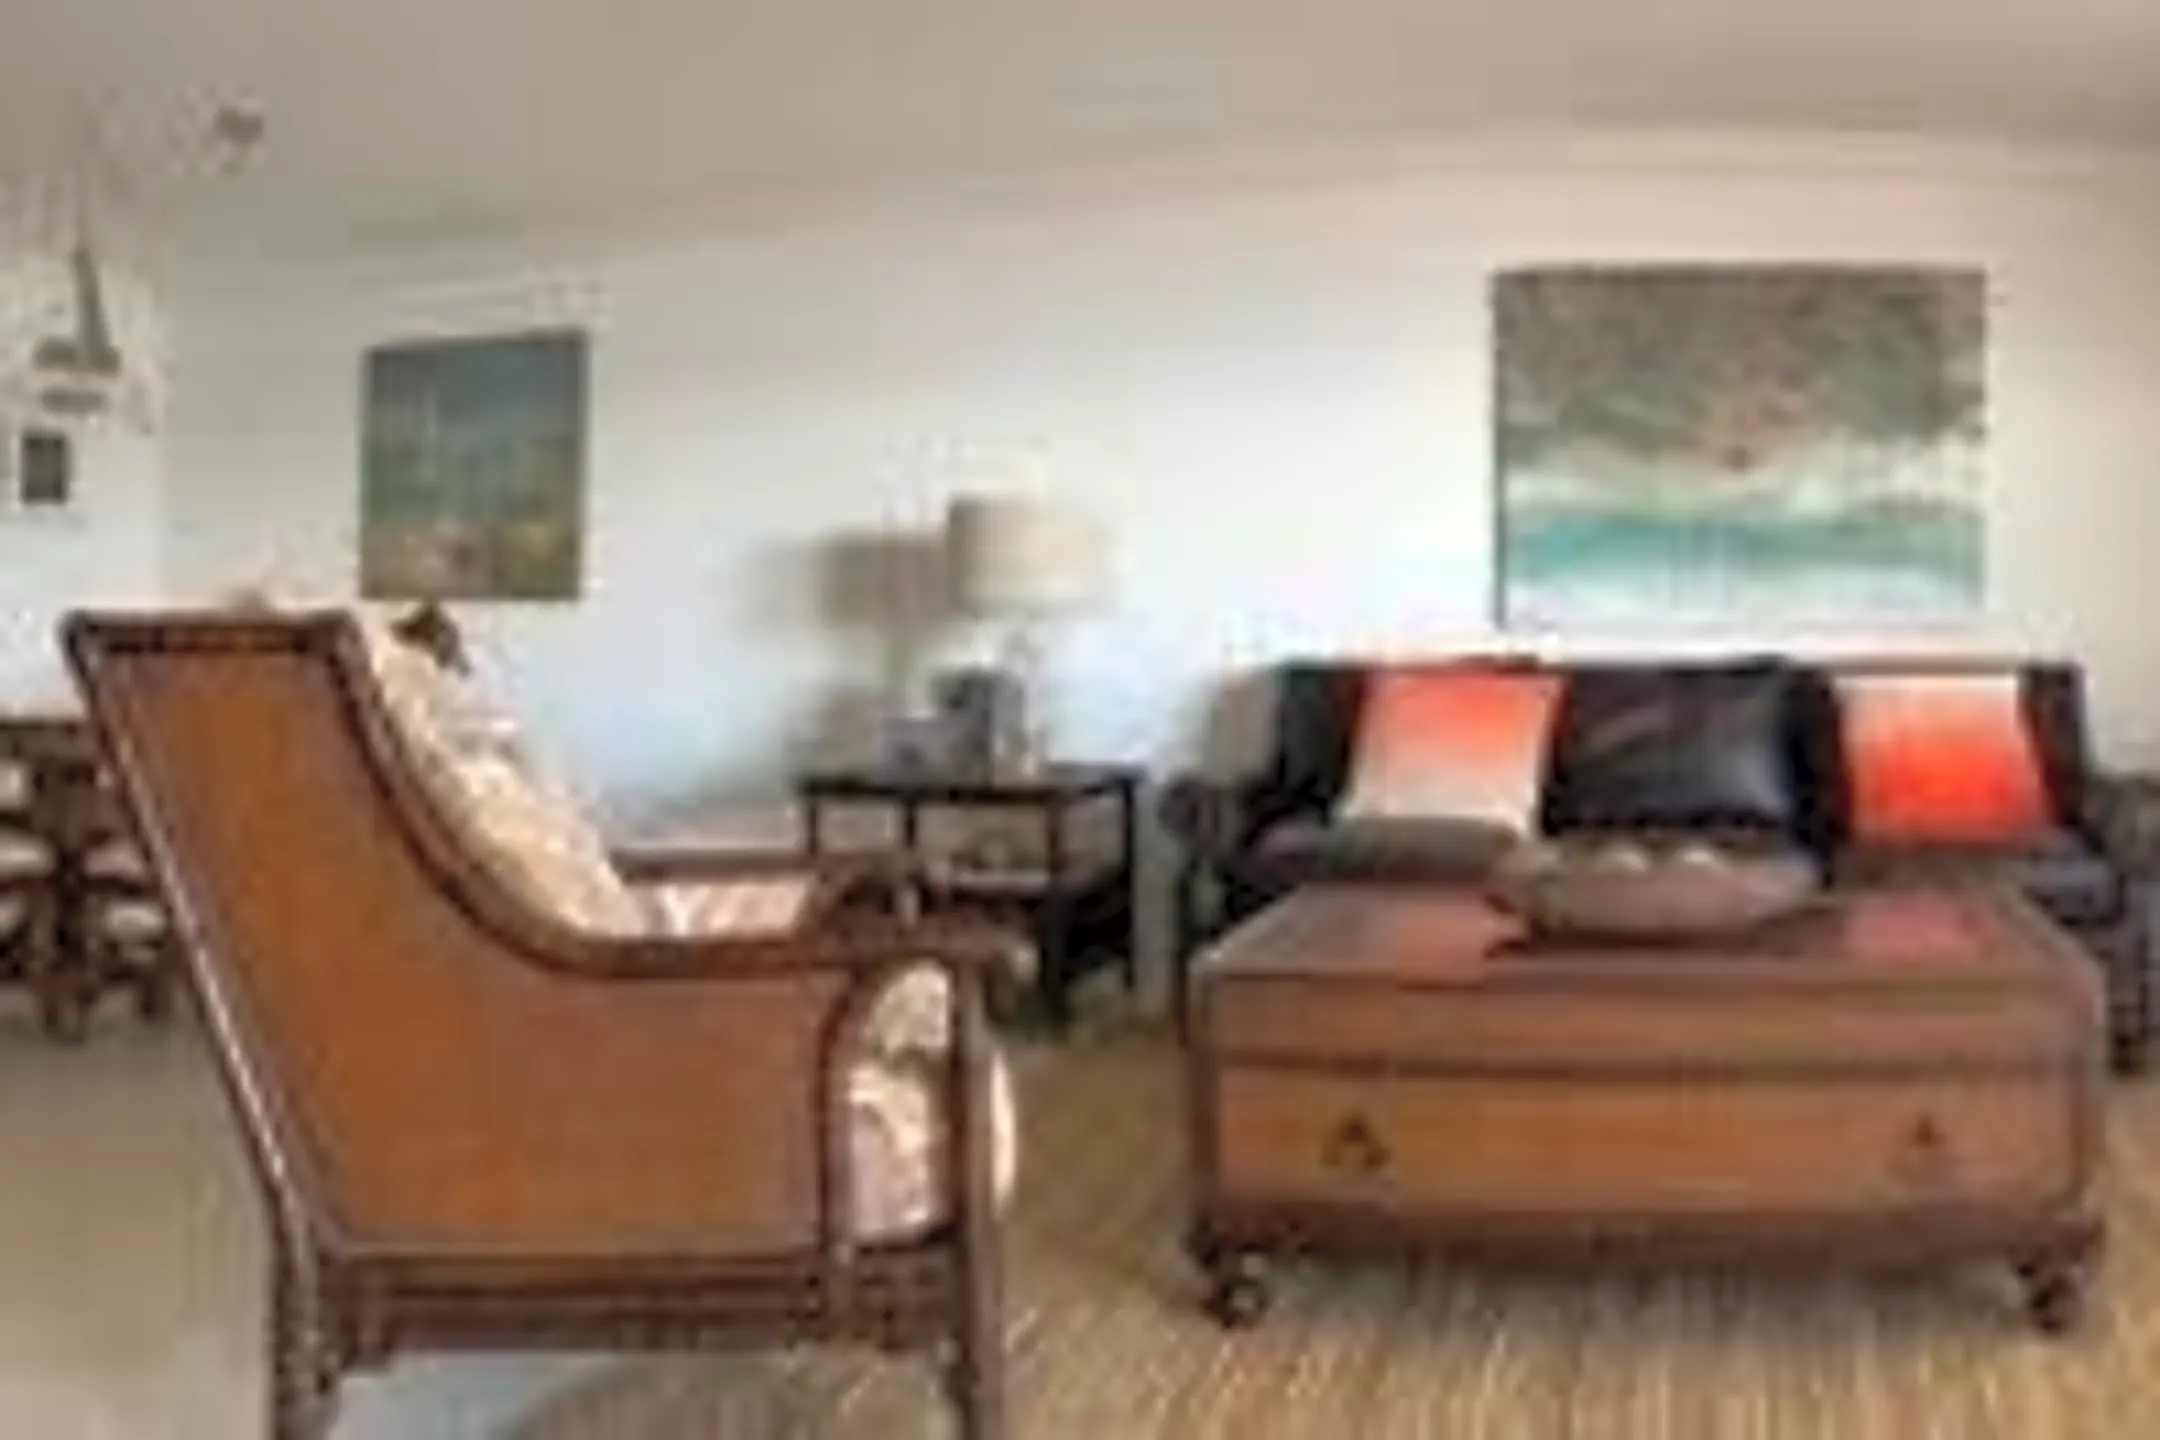 Living Room - 4101 Ocean Dr #3B - Vero Beach, FL